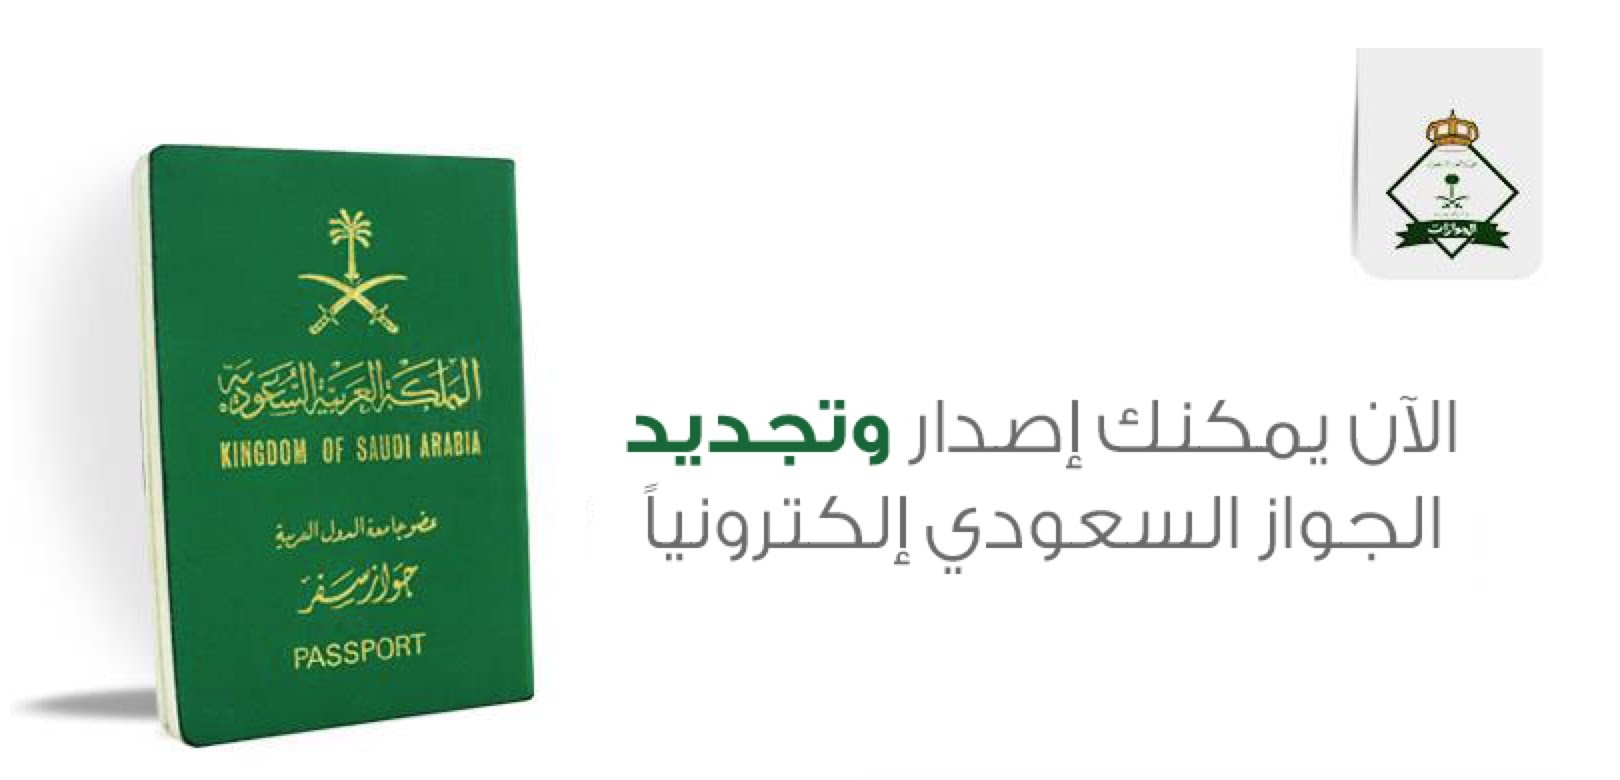 طريقة تجديد الجواز السعودي وقيمة الرسوم 2021 ثقفني